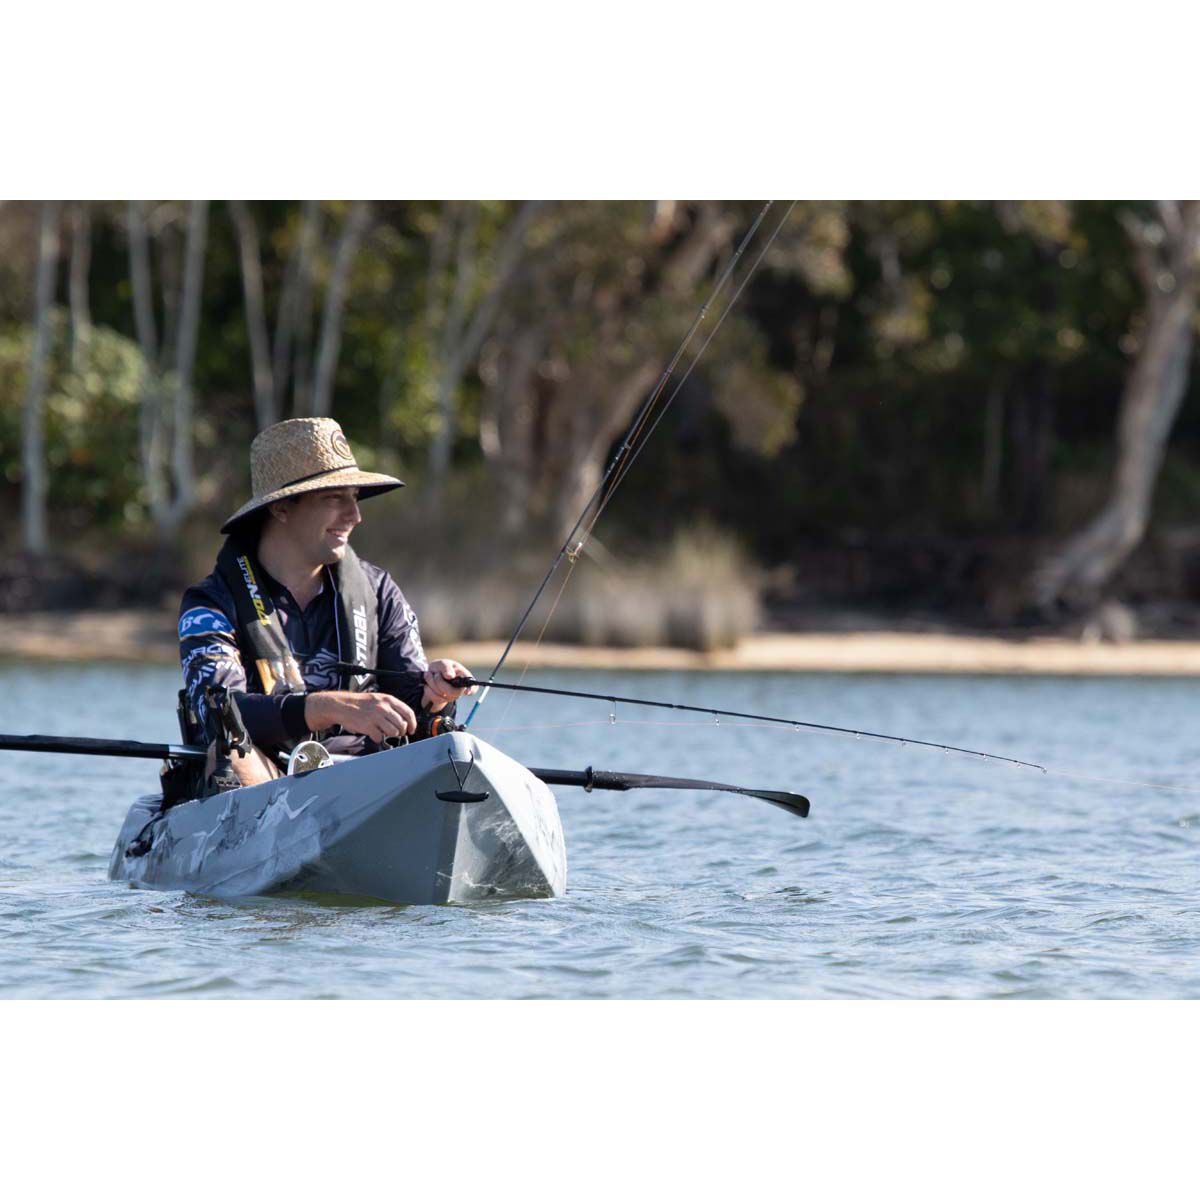 Pryml titan fishing kayak pt1, REVIEW